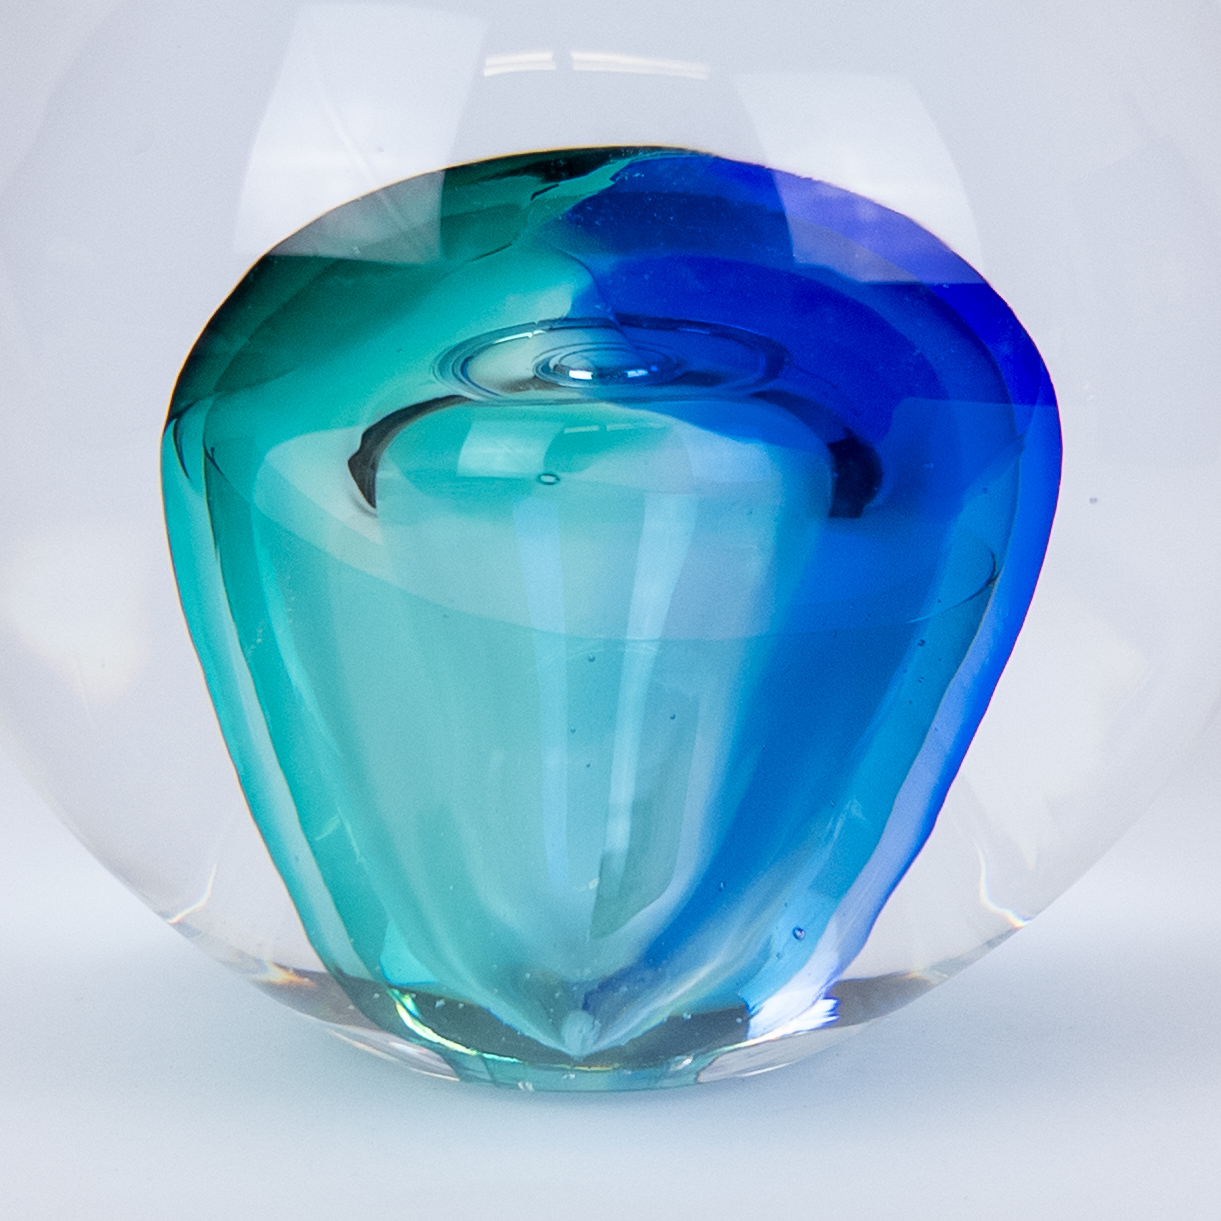 Steninge Slott Sweden Planet Earth Art Glass Candle Holder